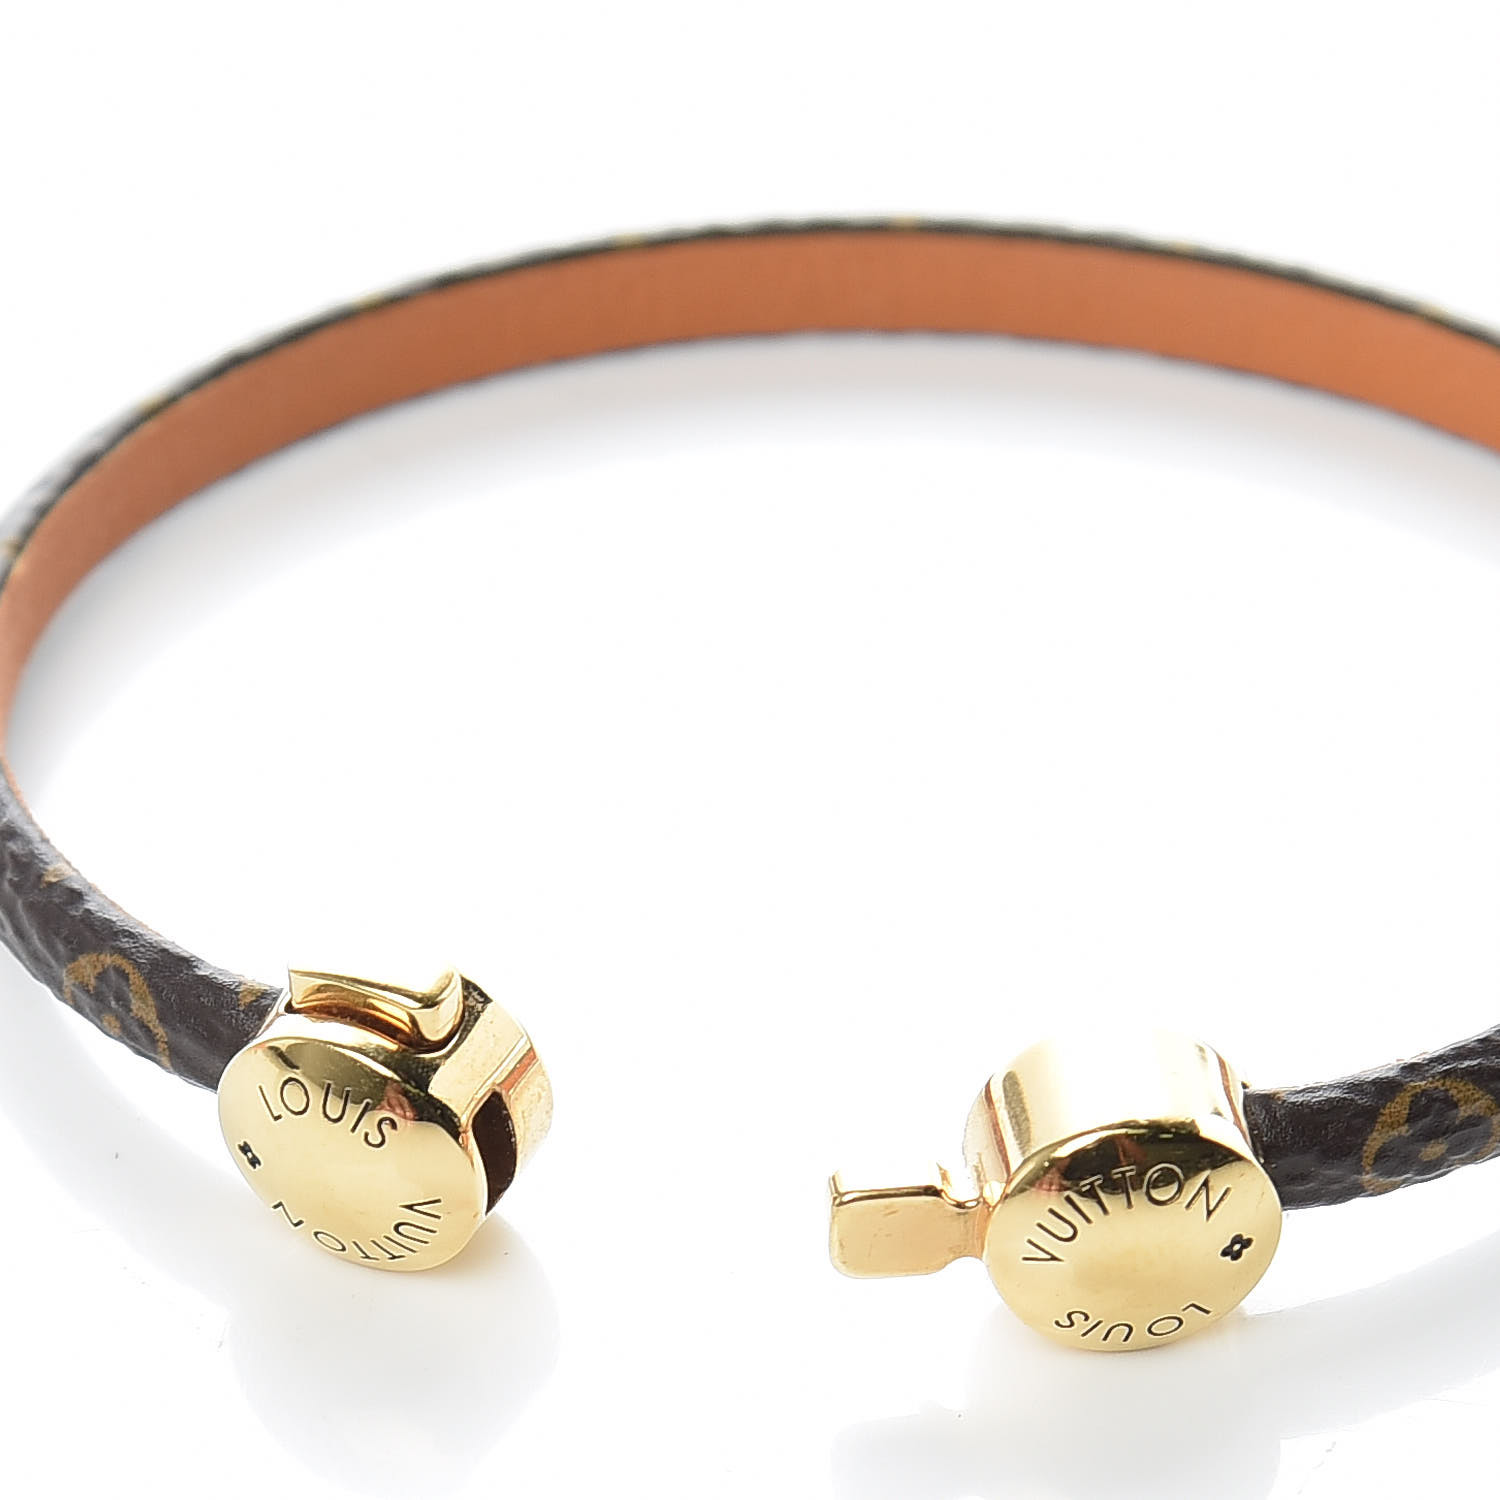 Louis Vuitton Historic Bracelet